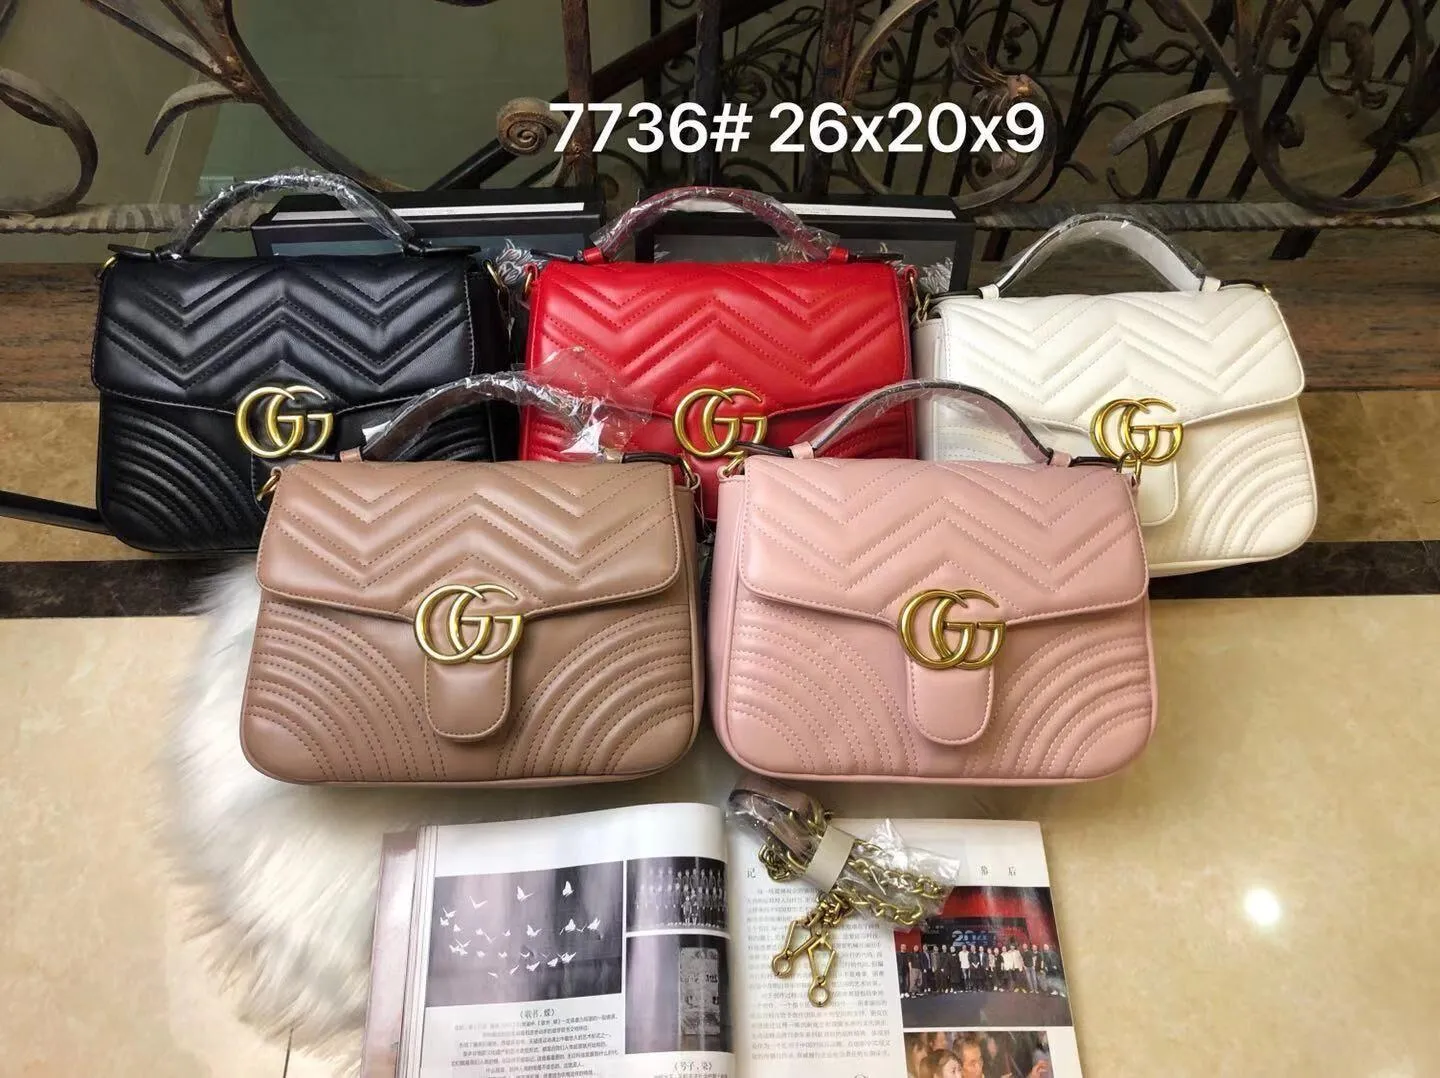 Gg marmont velvet handbag Gucci Black in Velvet - 41565150